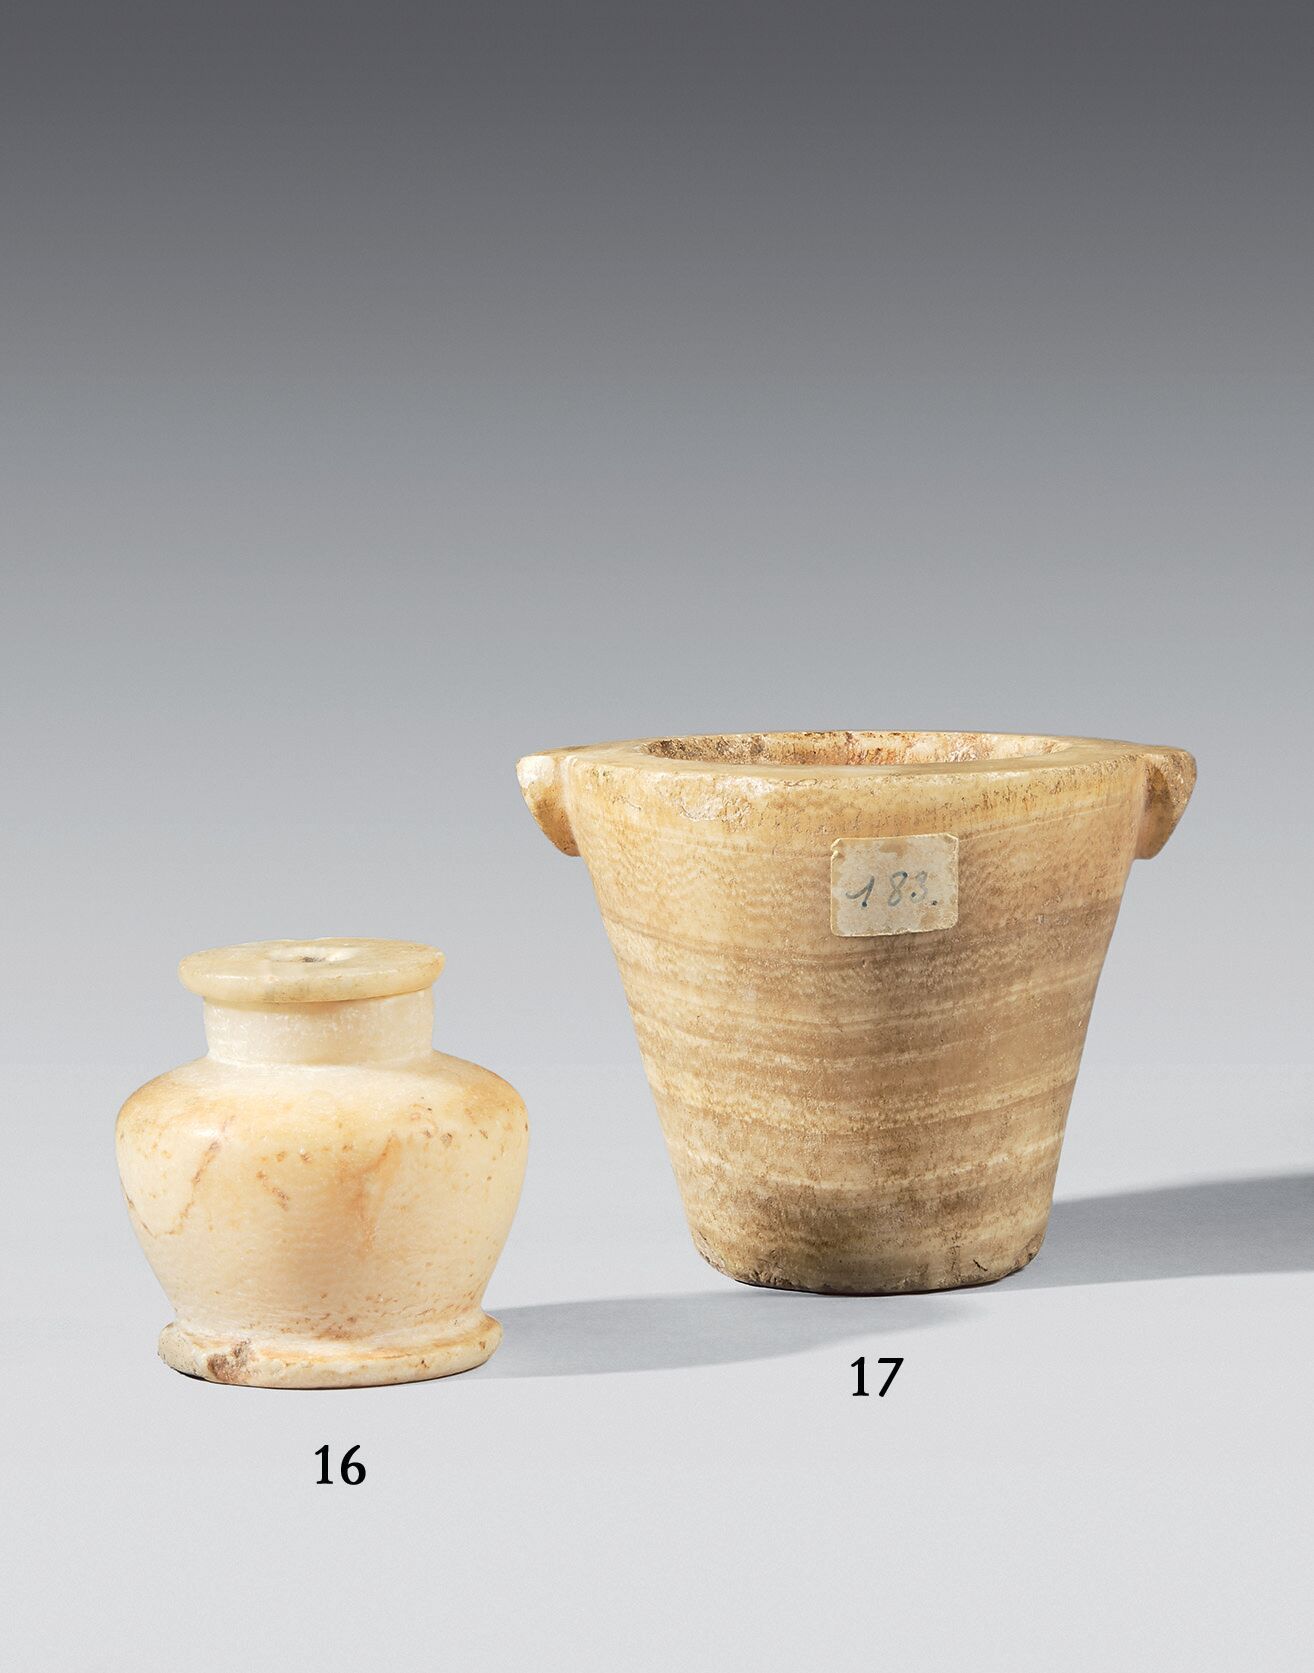 Null 截顶的圆锥形花瓶，有两个小把手，带状雪花石。
小碎片。
埃及，晚期。
高度：10厘米